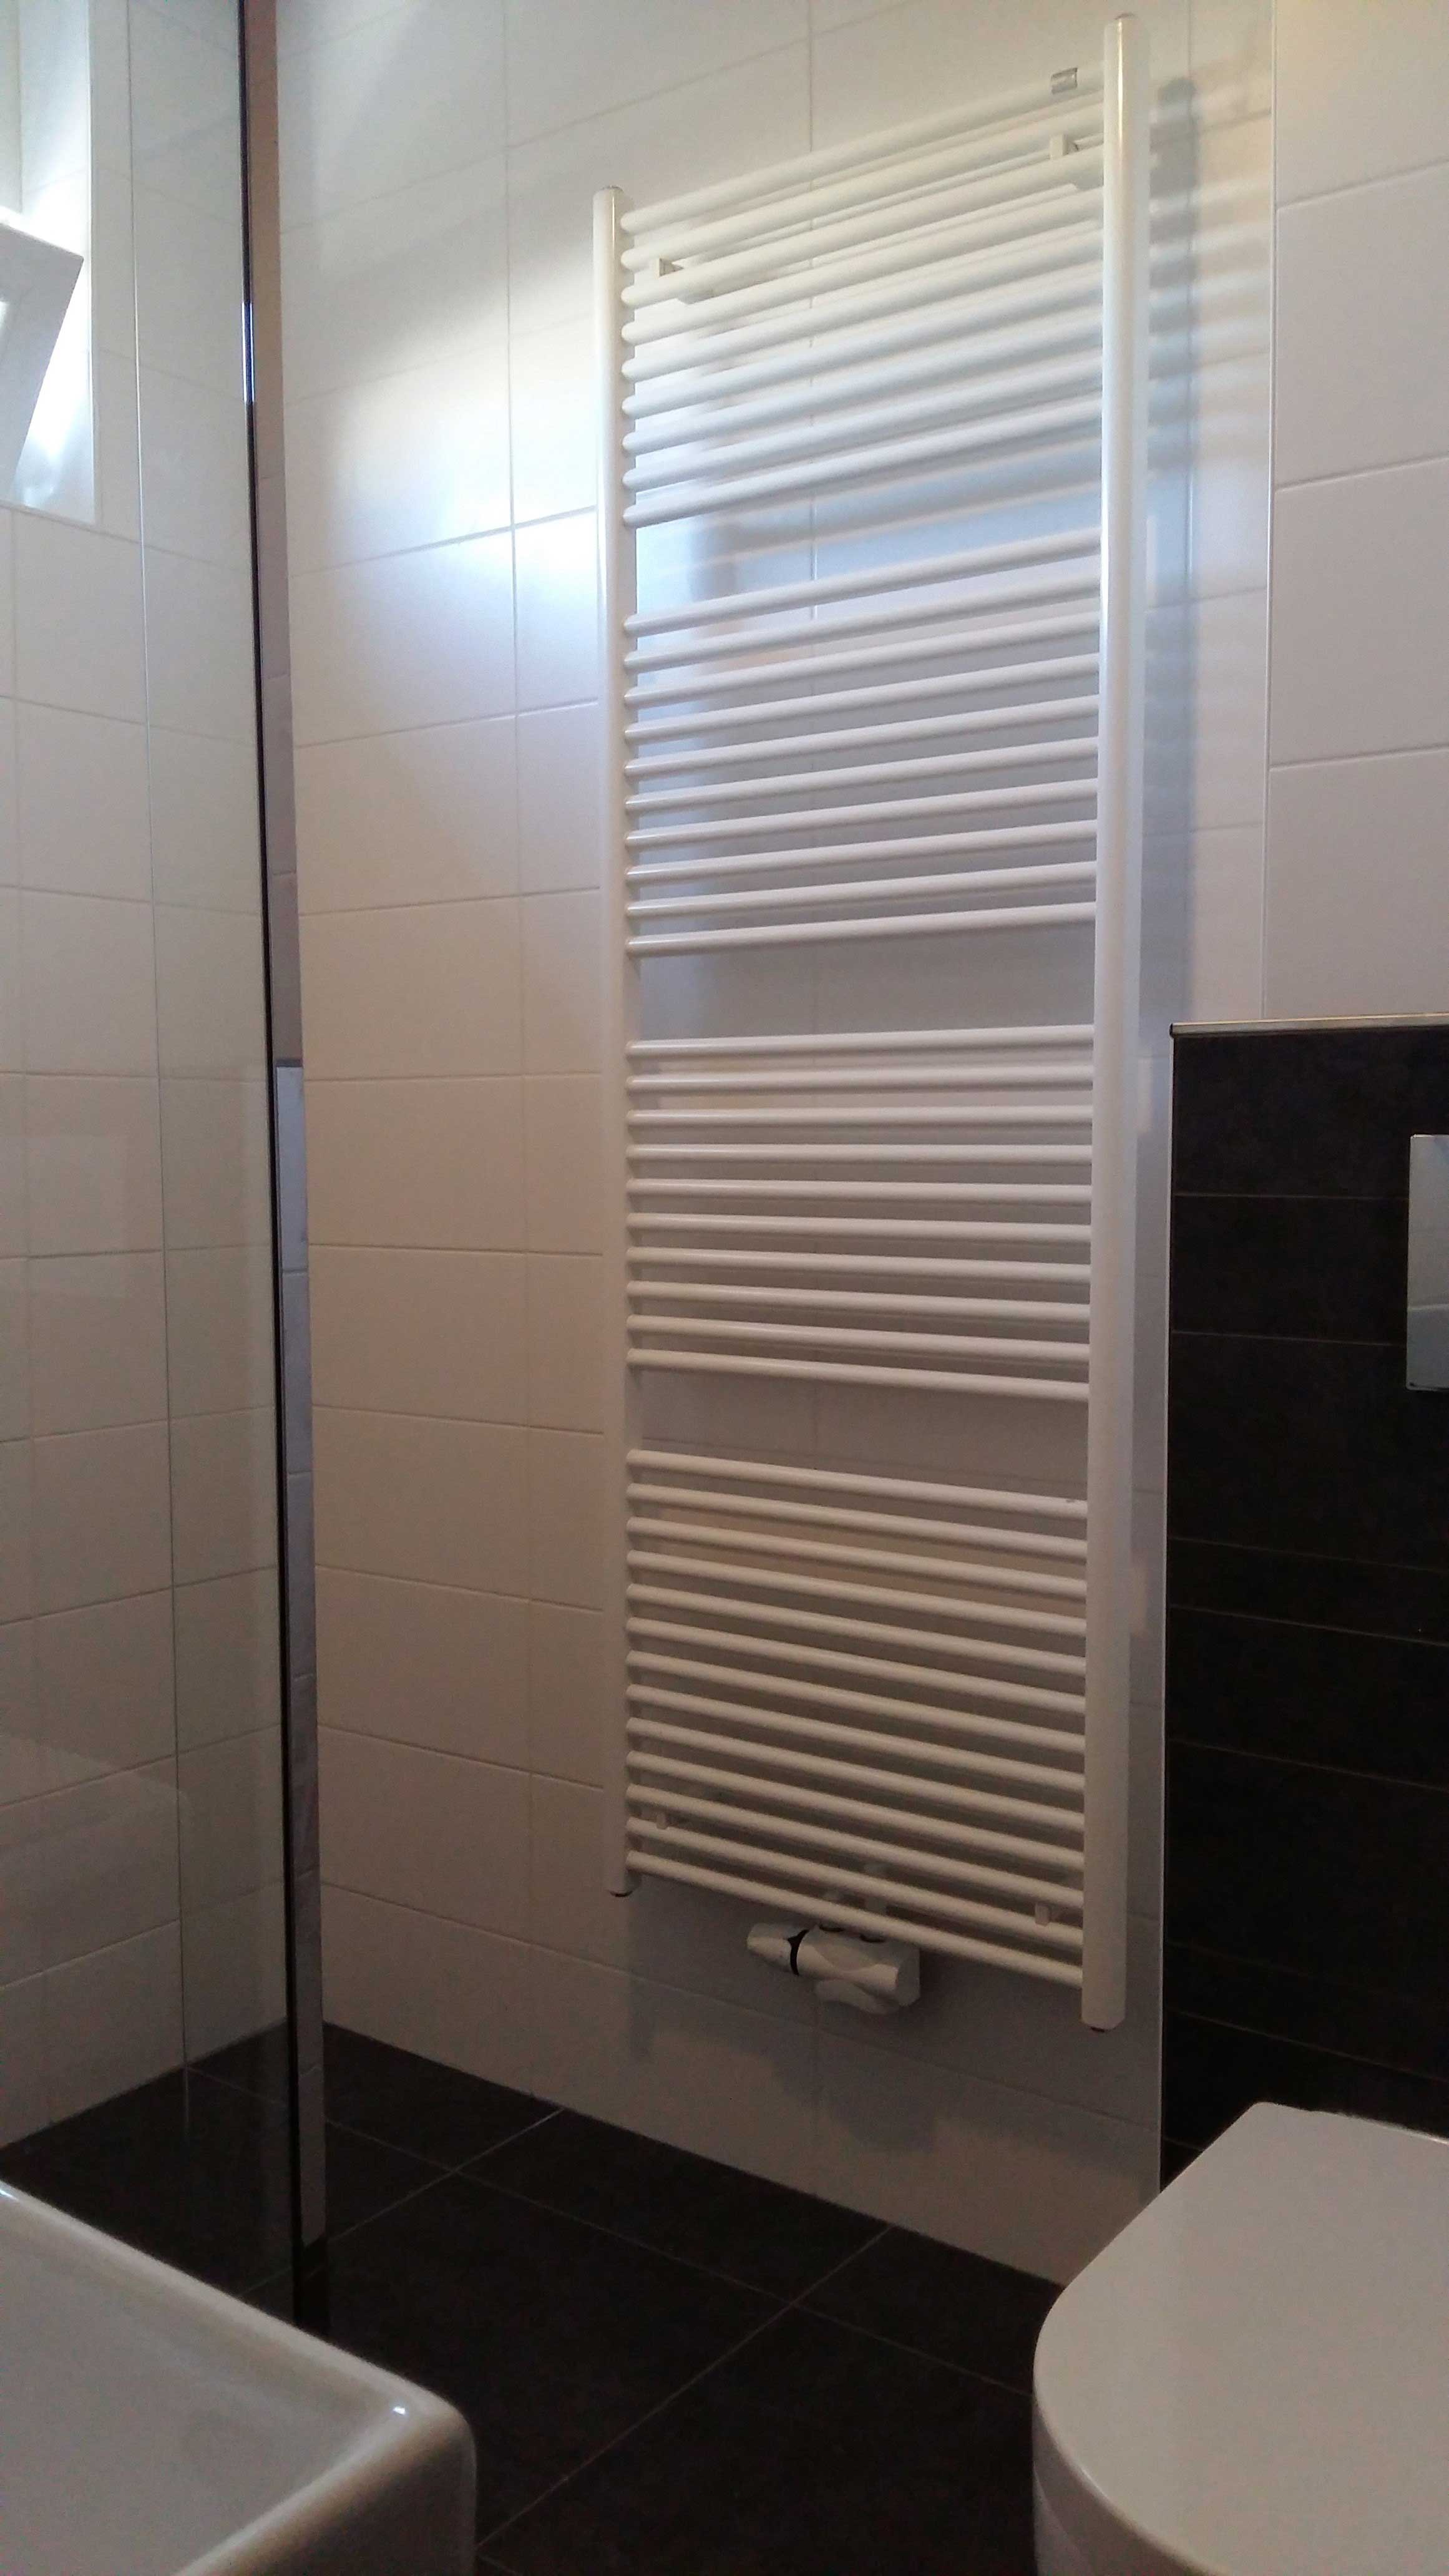 loodgietersbedrijf-jj-petit-bv---ook-voor-uw-badkamer---foto-na-radiator